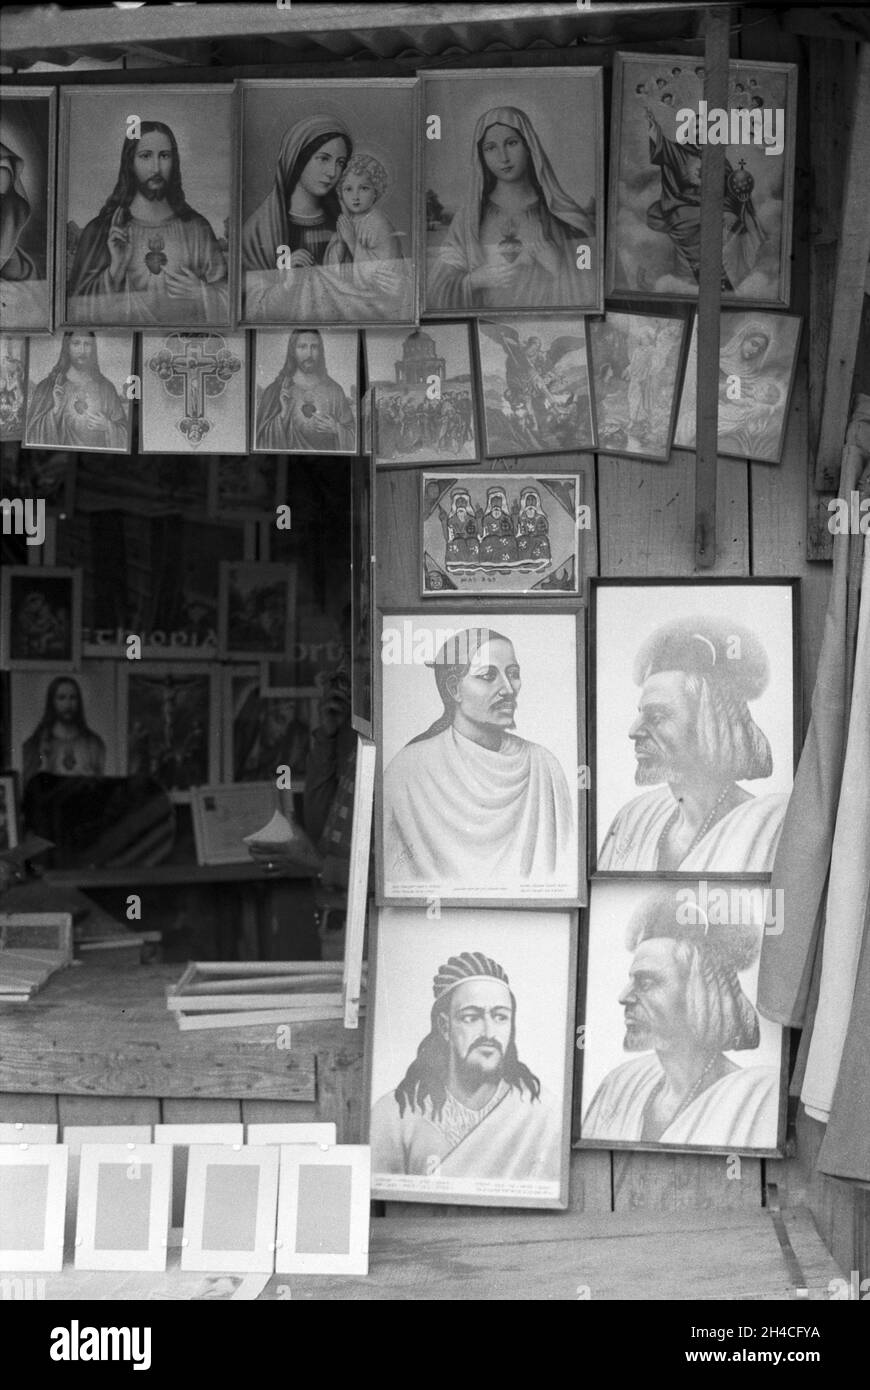 Afrika, Äthiopien, 1976. Addis Abba. Ein Geschäft, in dem Ikonen und Zeichnungen von äthiopischen Helden, Kaisern und orthodoxen christlichen Heiligen verkauft werden Stockfoto